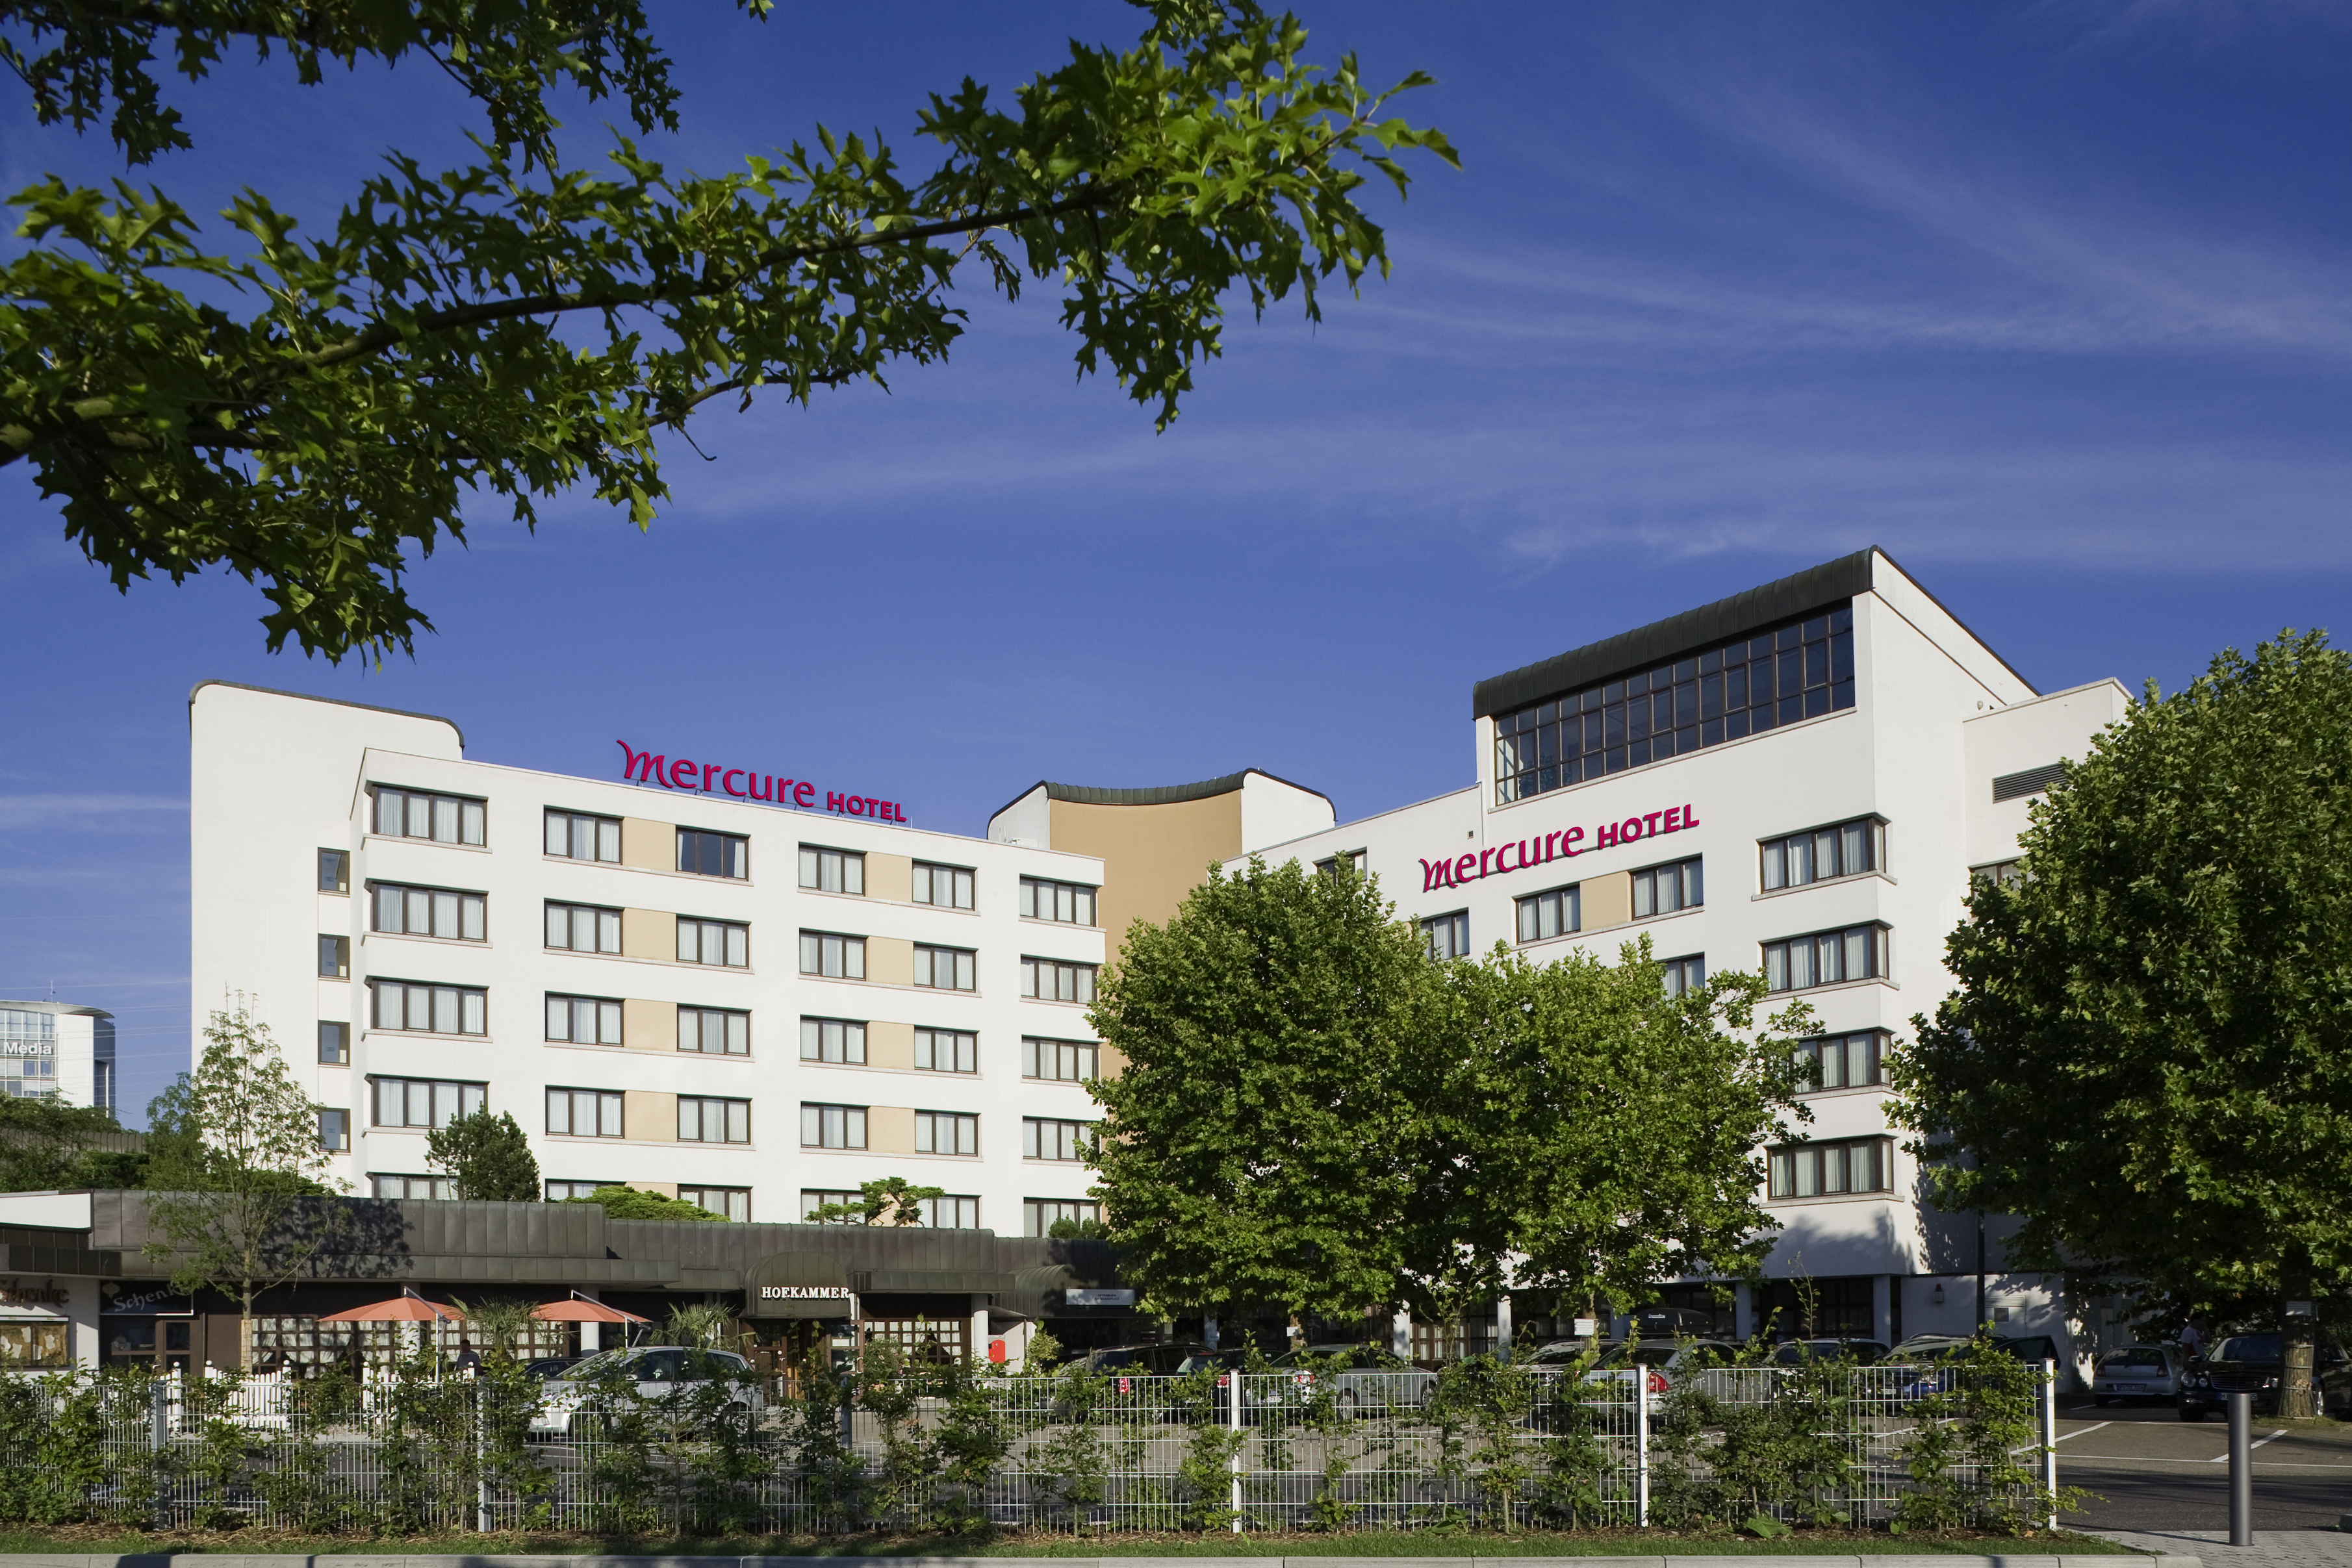 Mercure Hotel Offenburg am Messeplatz in Offenburg bei Kehl